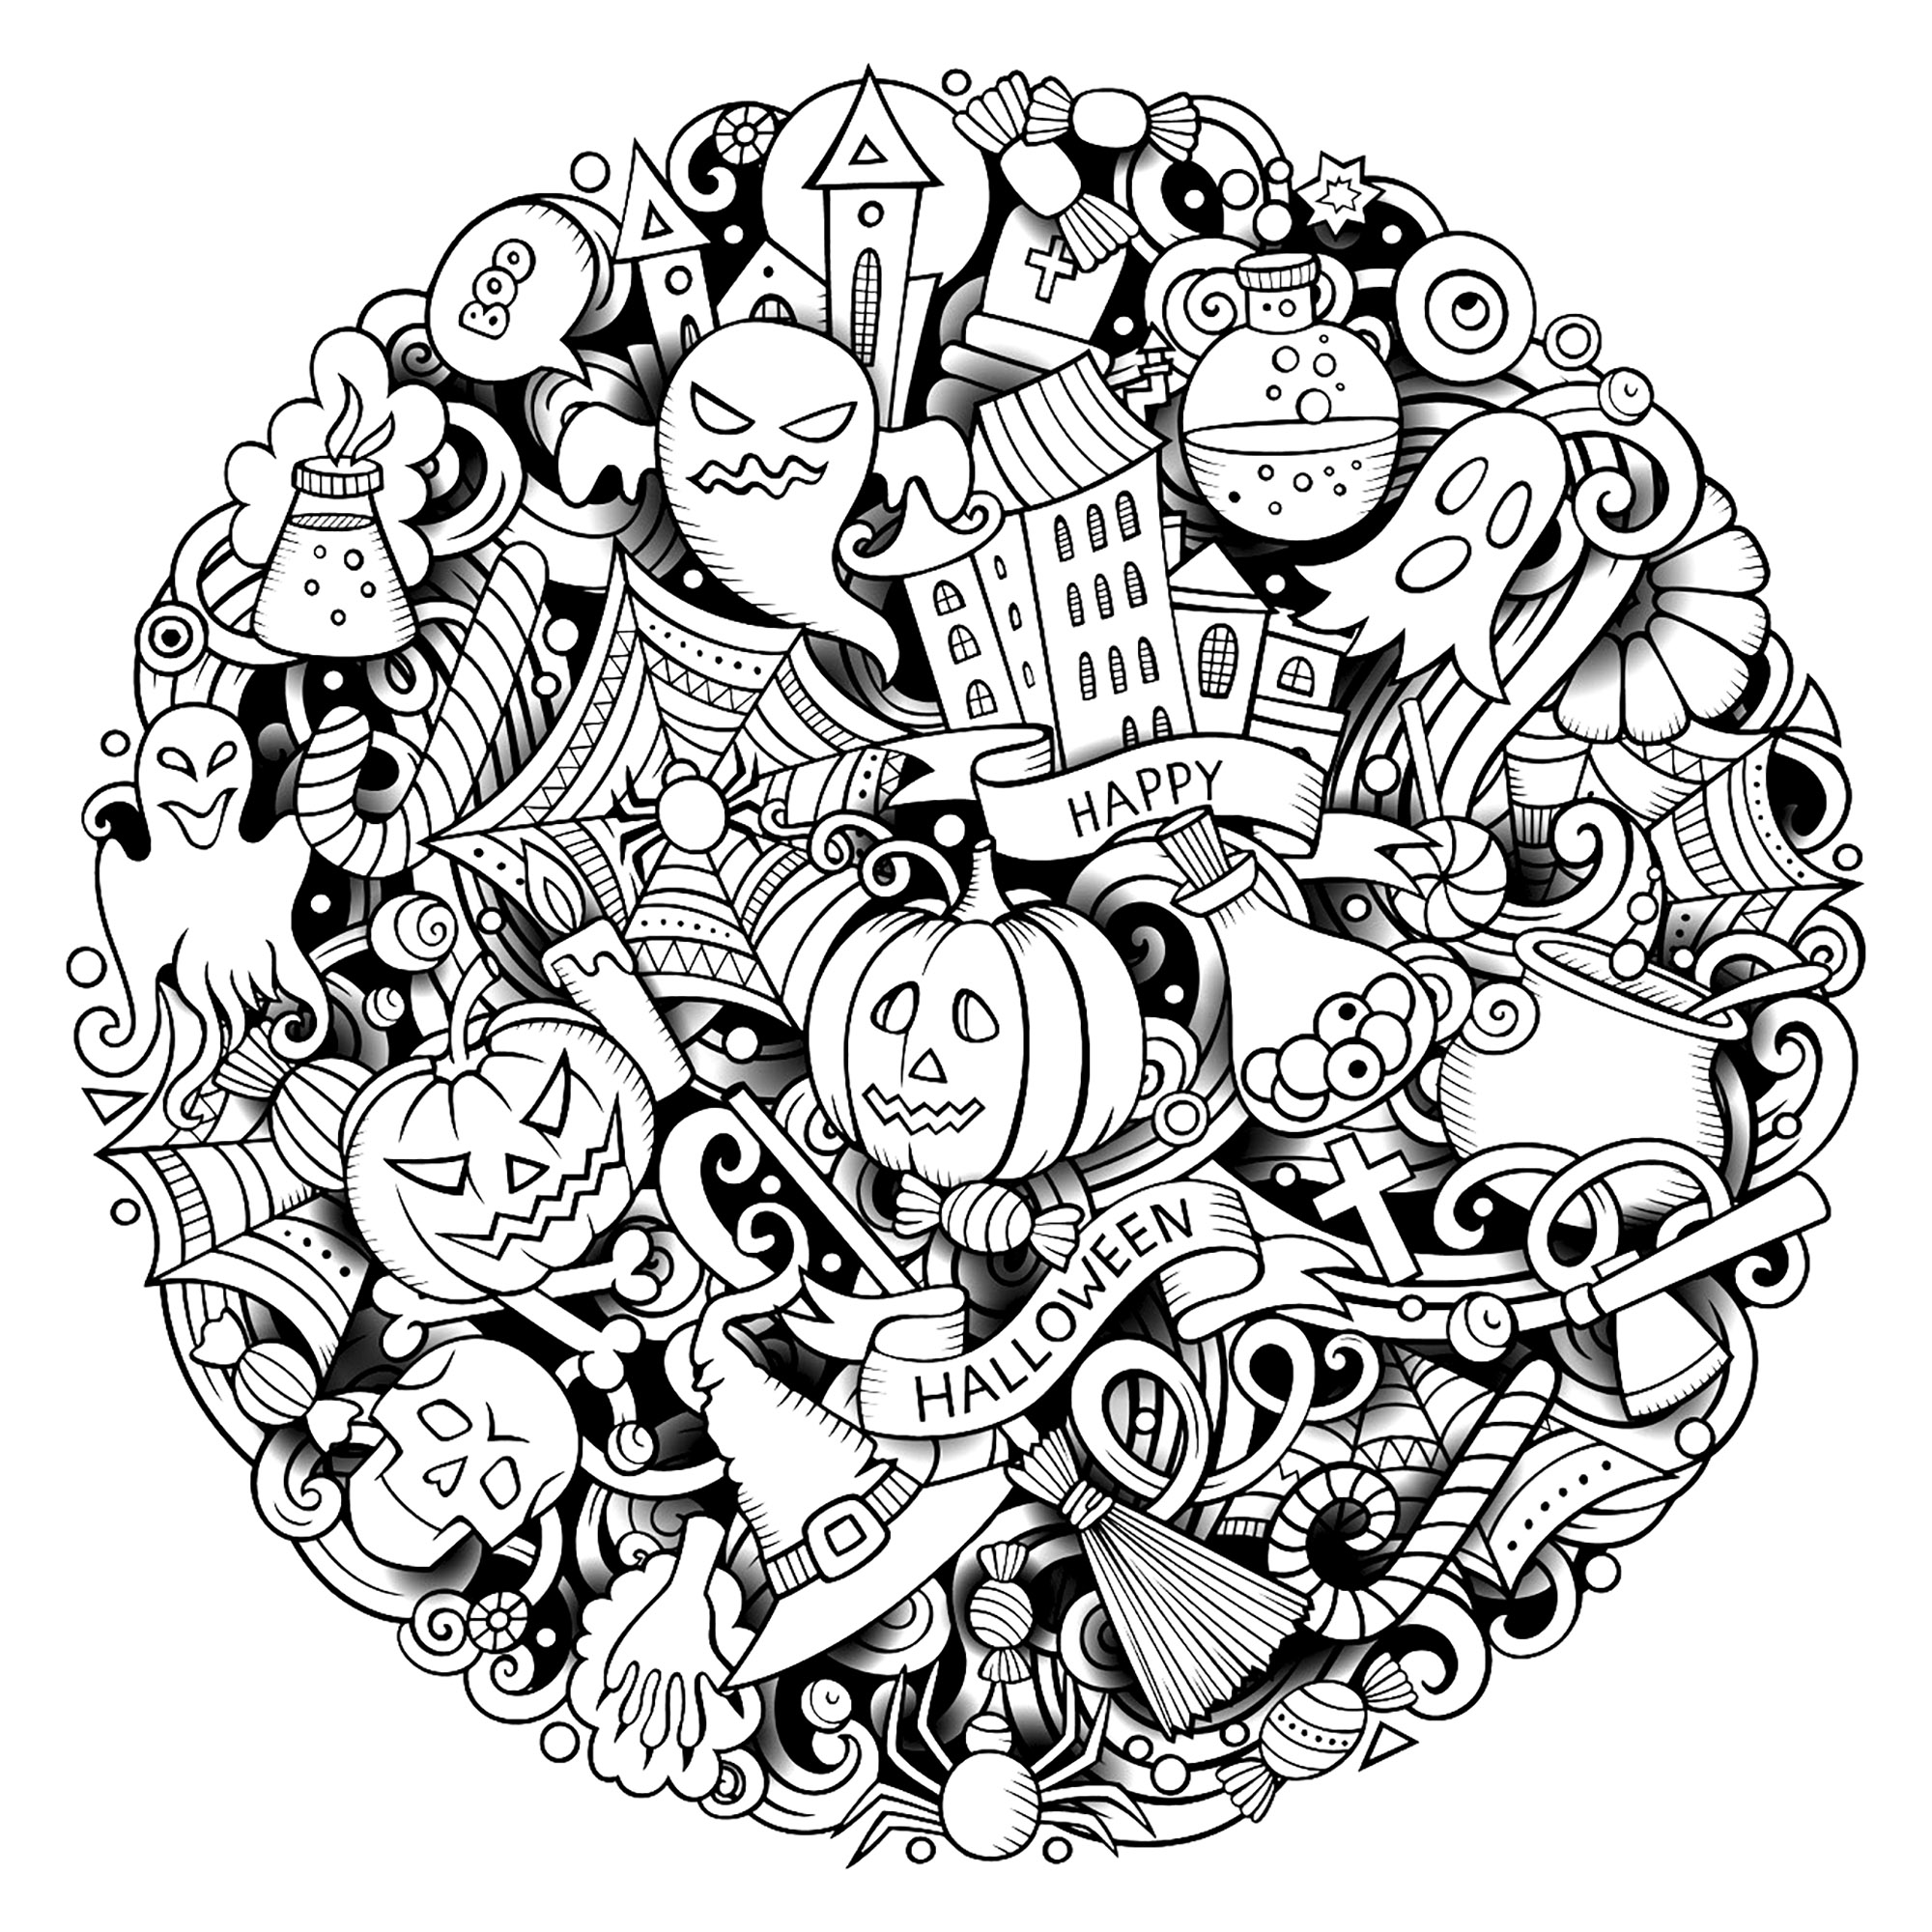 Um Doodle de Halloween complexo. Vários símbolos e personagens do Dia das Bruxas num Doodle circular (abóboras, fantasmas, esqueletos, aranhas, etc.), Fonte : 123rf   Artista : Balabolka